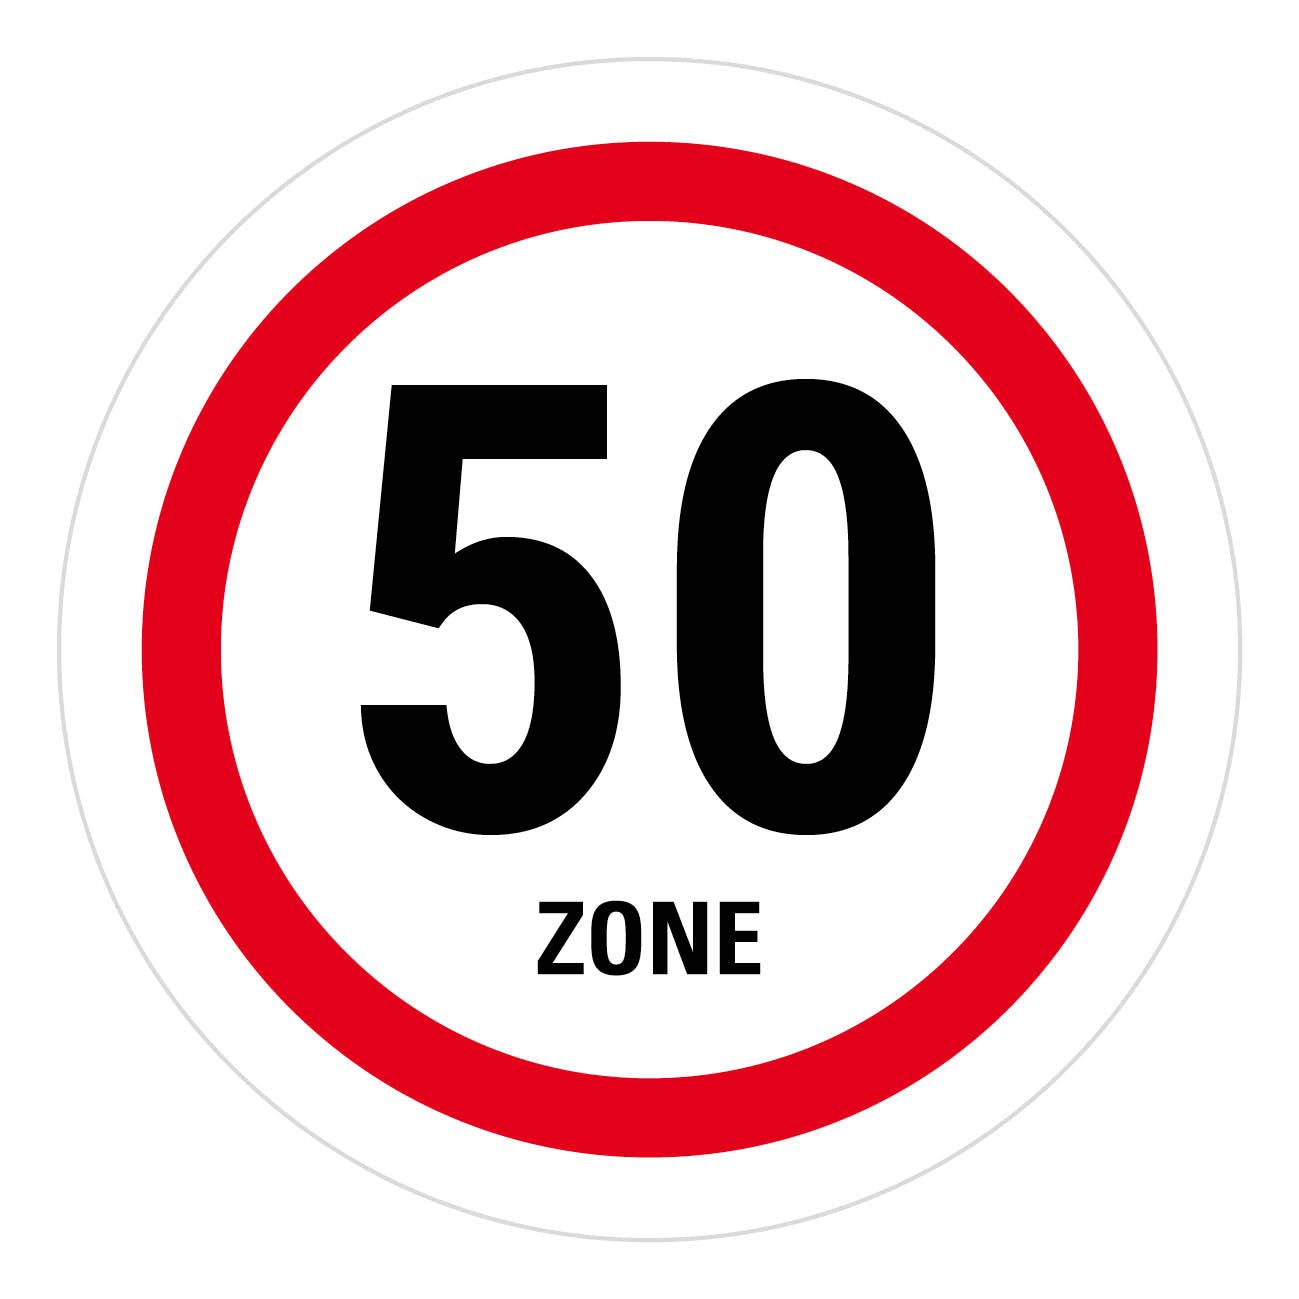 Bierdeckel Einladung zum Geburtstag: Zone 50 - Individuelle Einladung